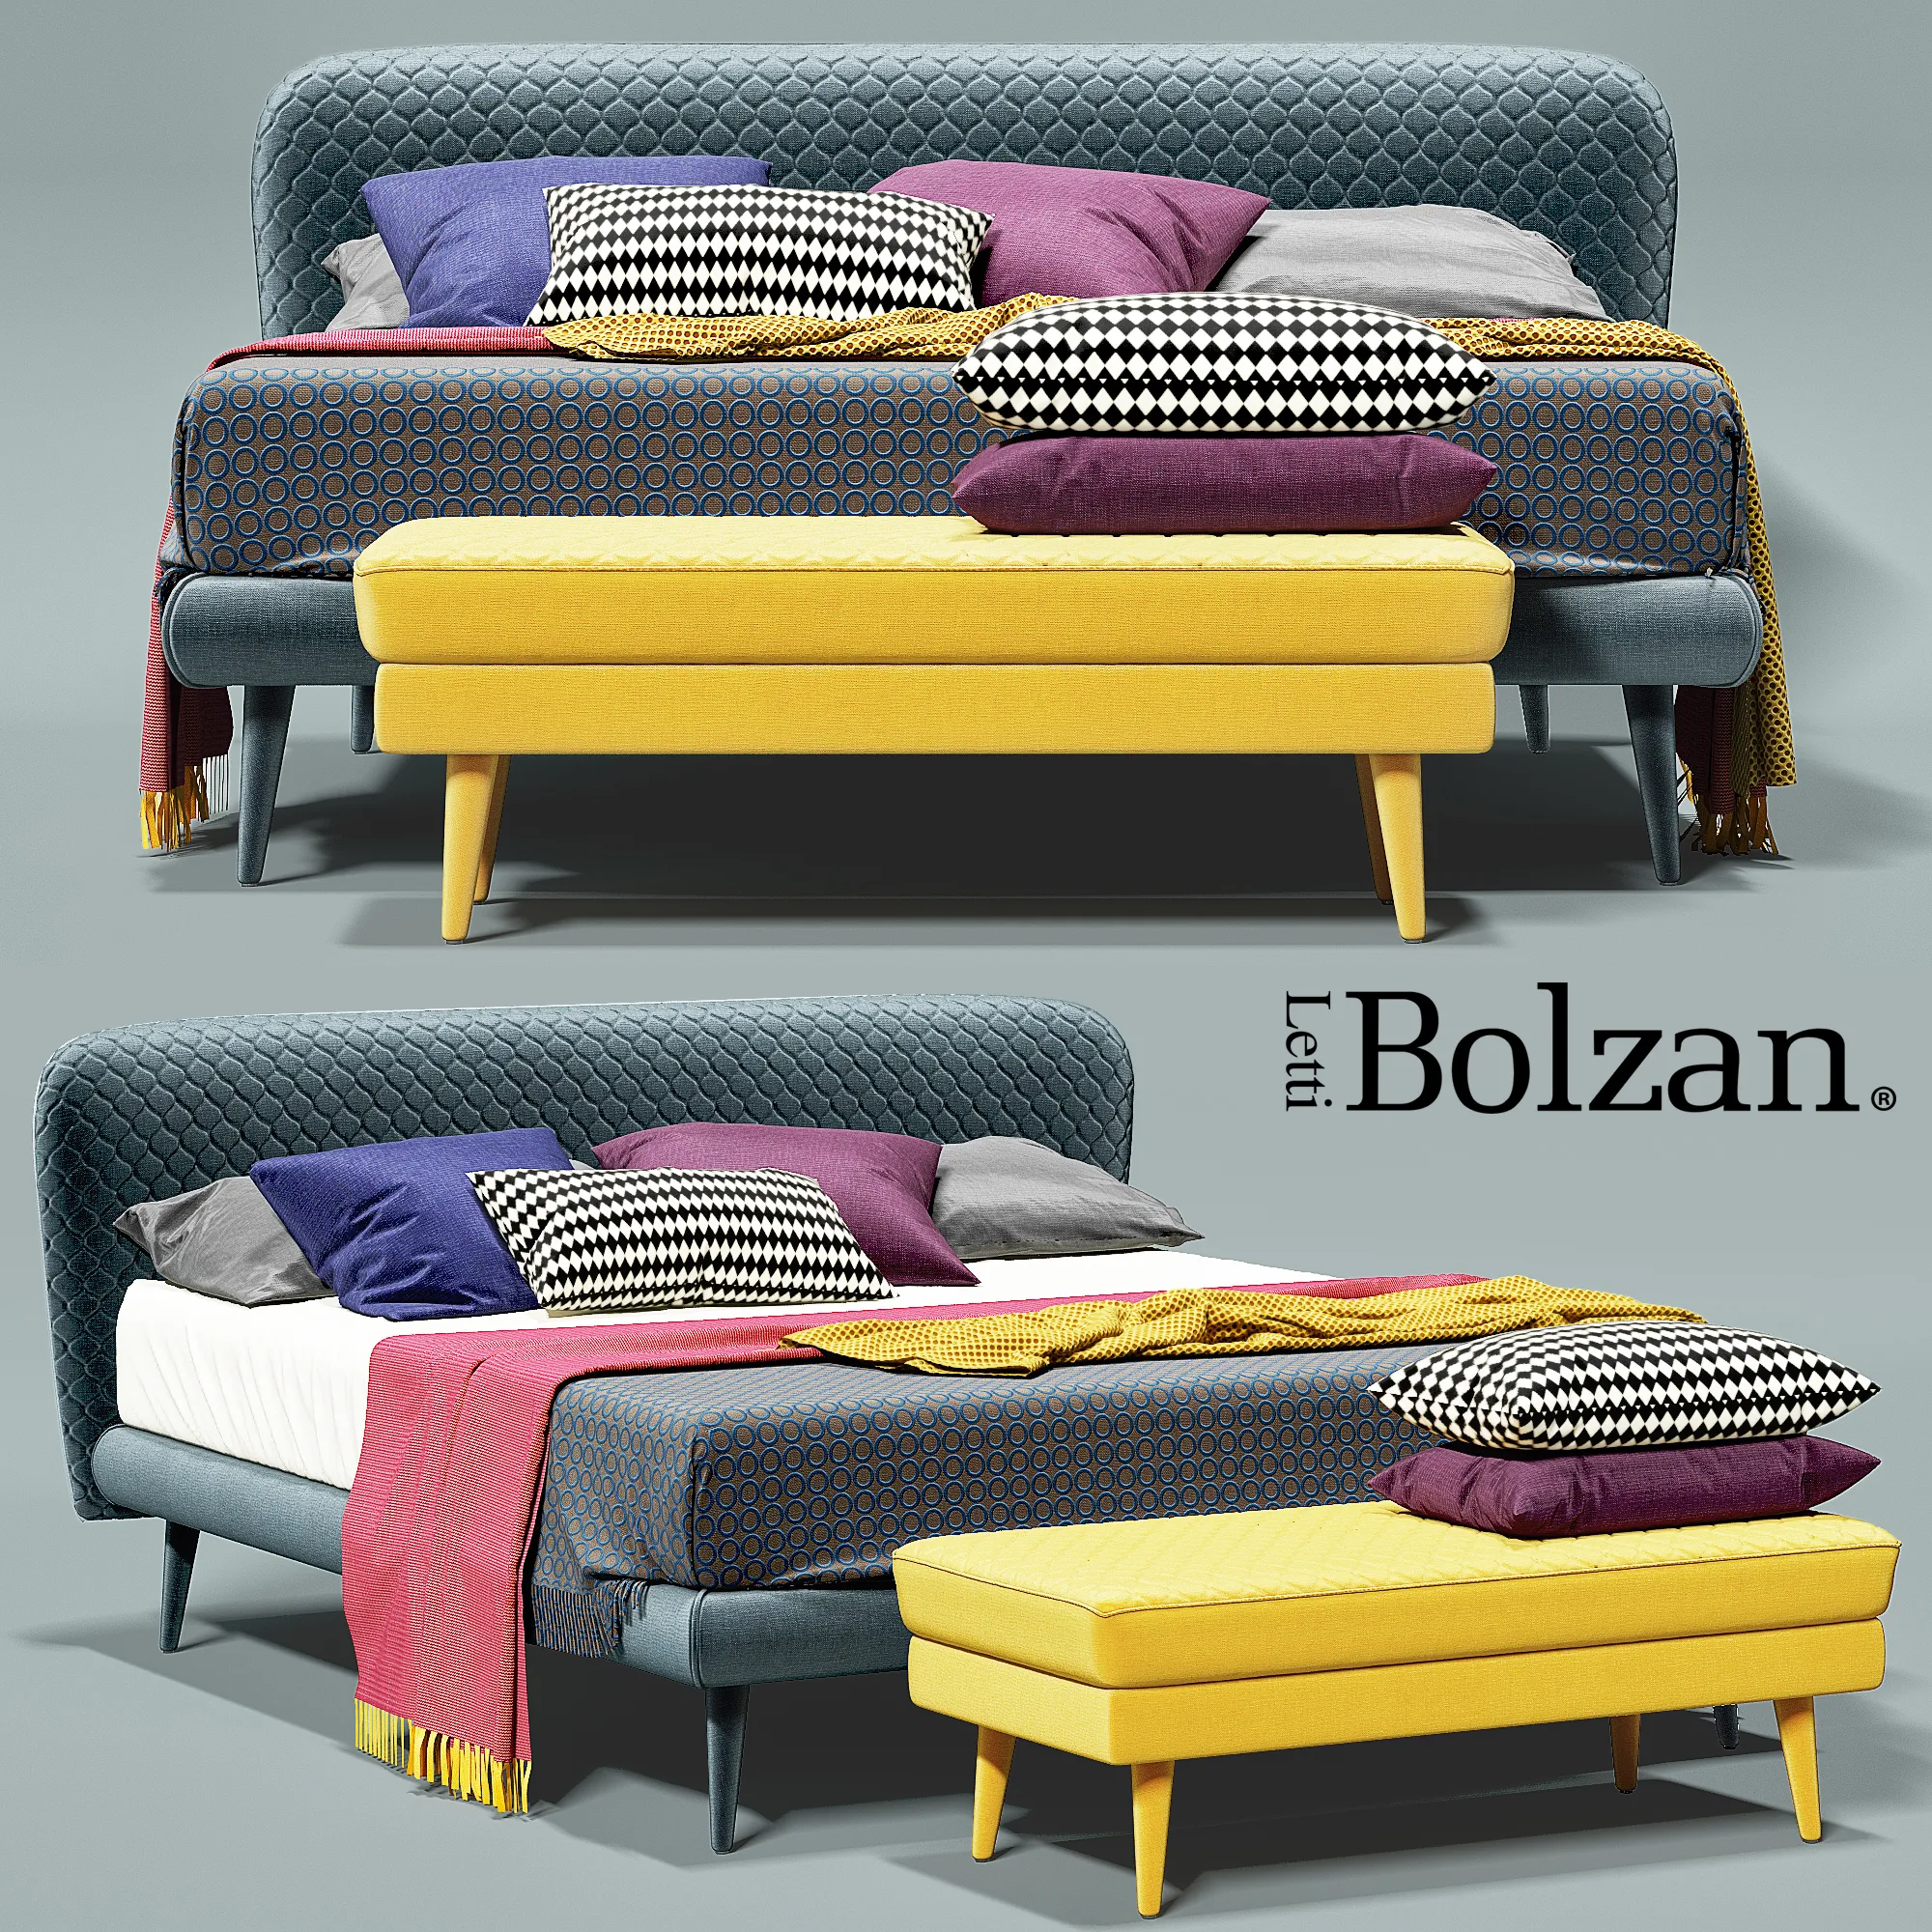 Bed Bolzan Corolle – 207603